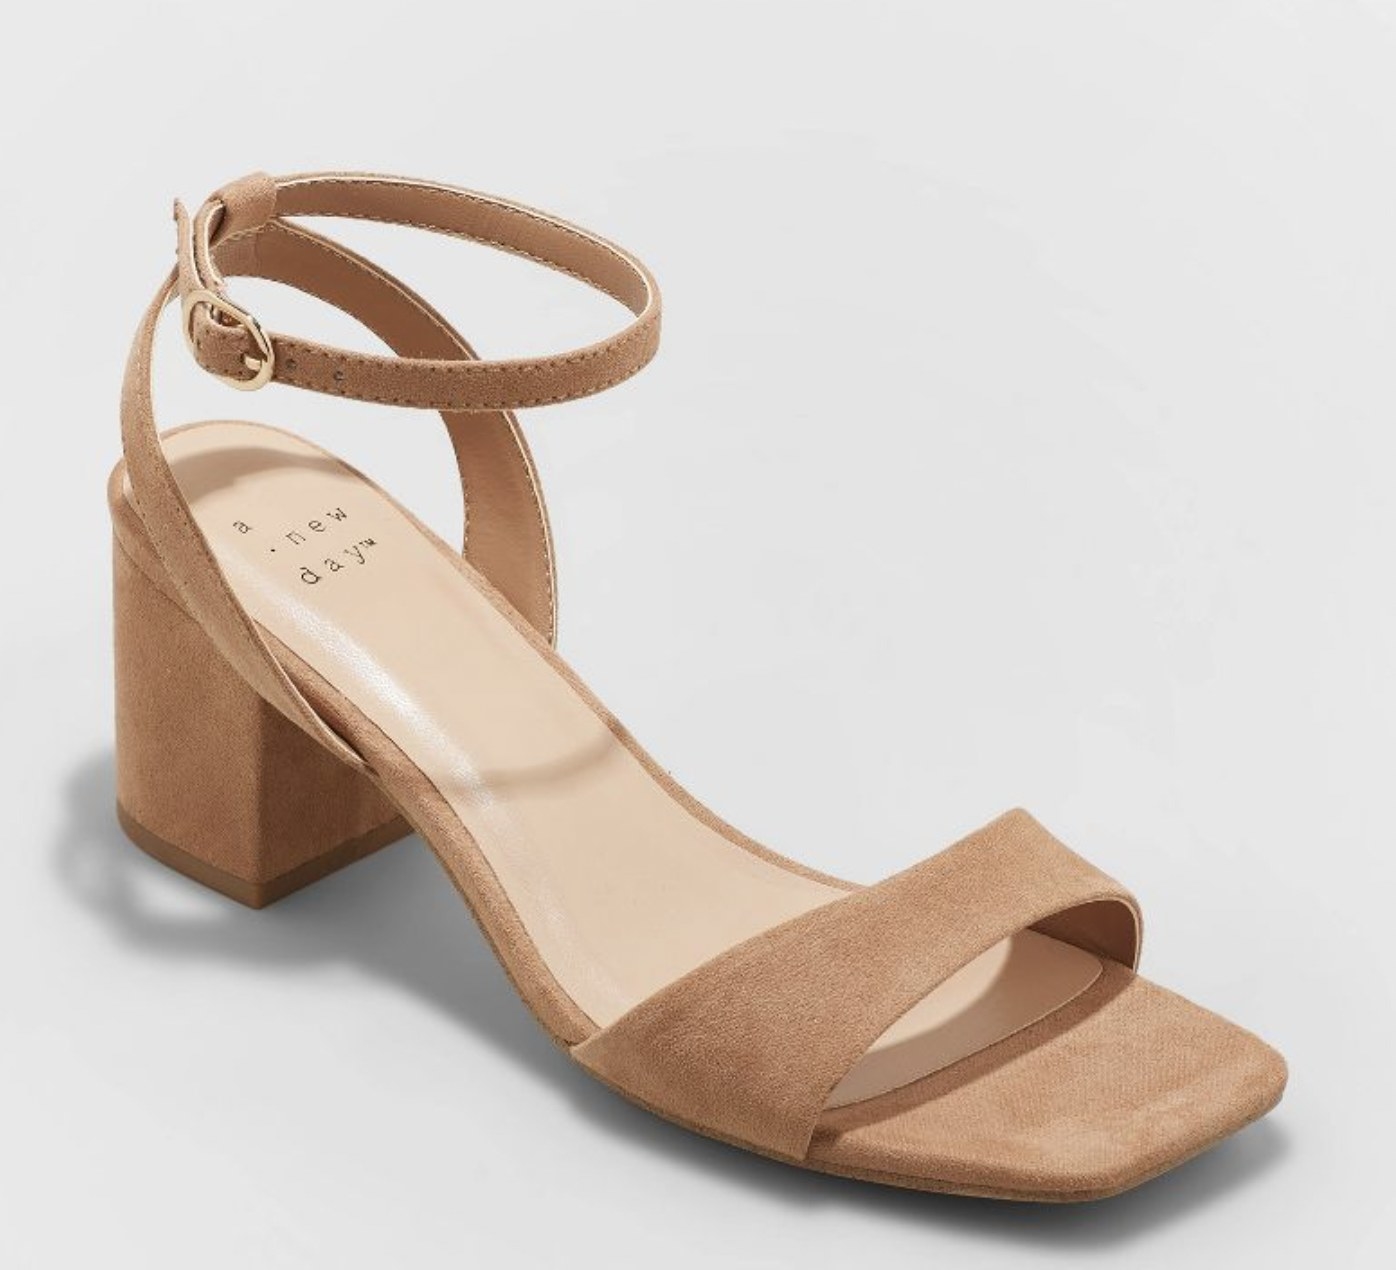 the heels in tan suede